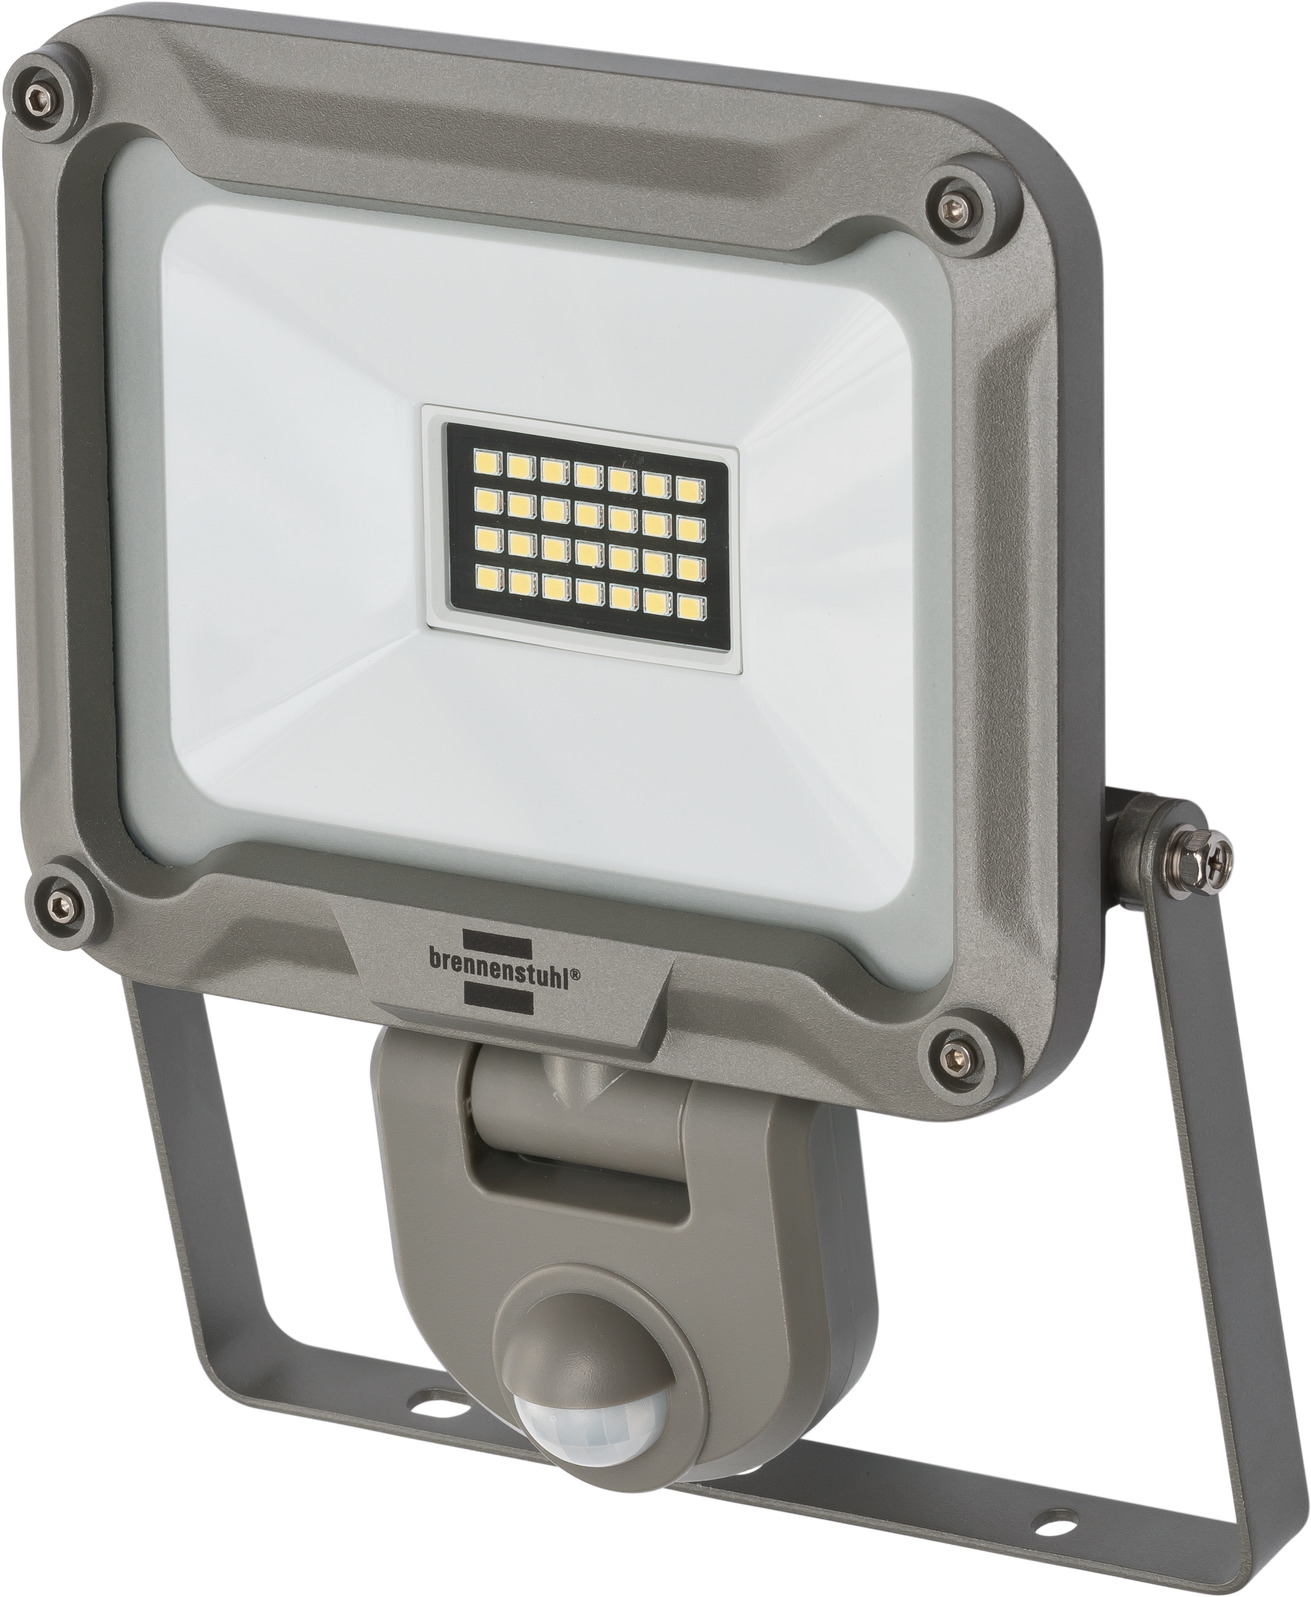 LED Strahler JARO 2050 P mit brennenstuhl® IP54 | Infrarot-Bewegungsmelder 1950lm, 19,7W